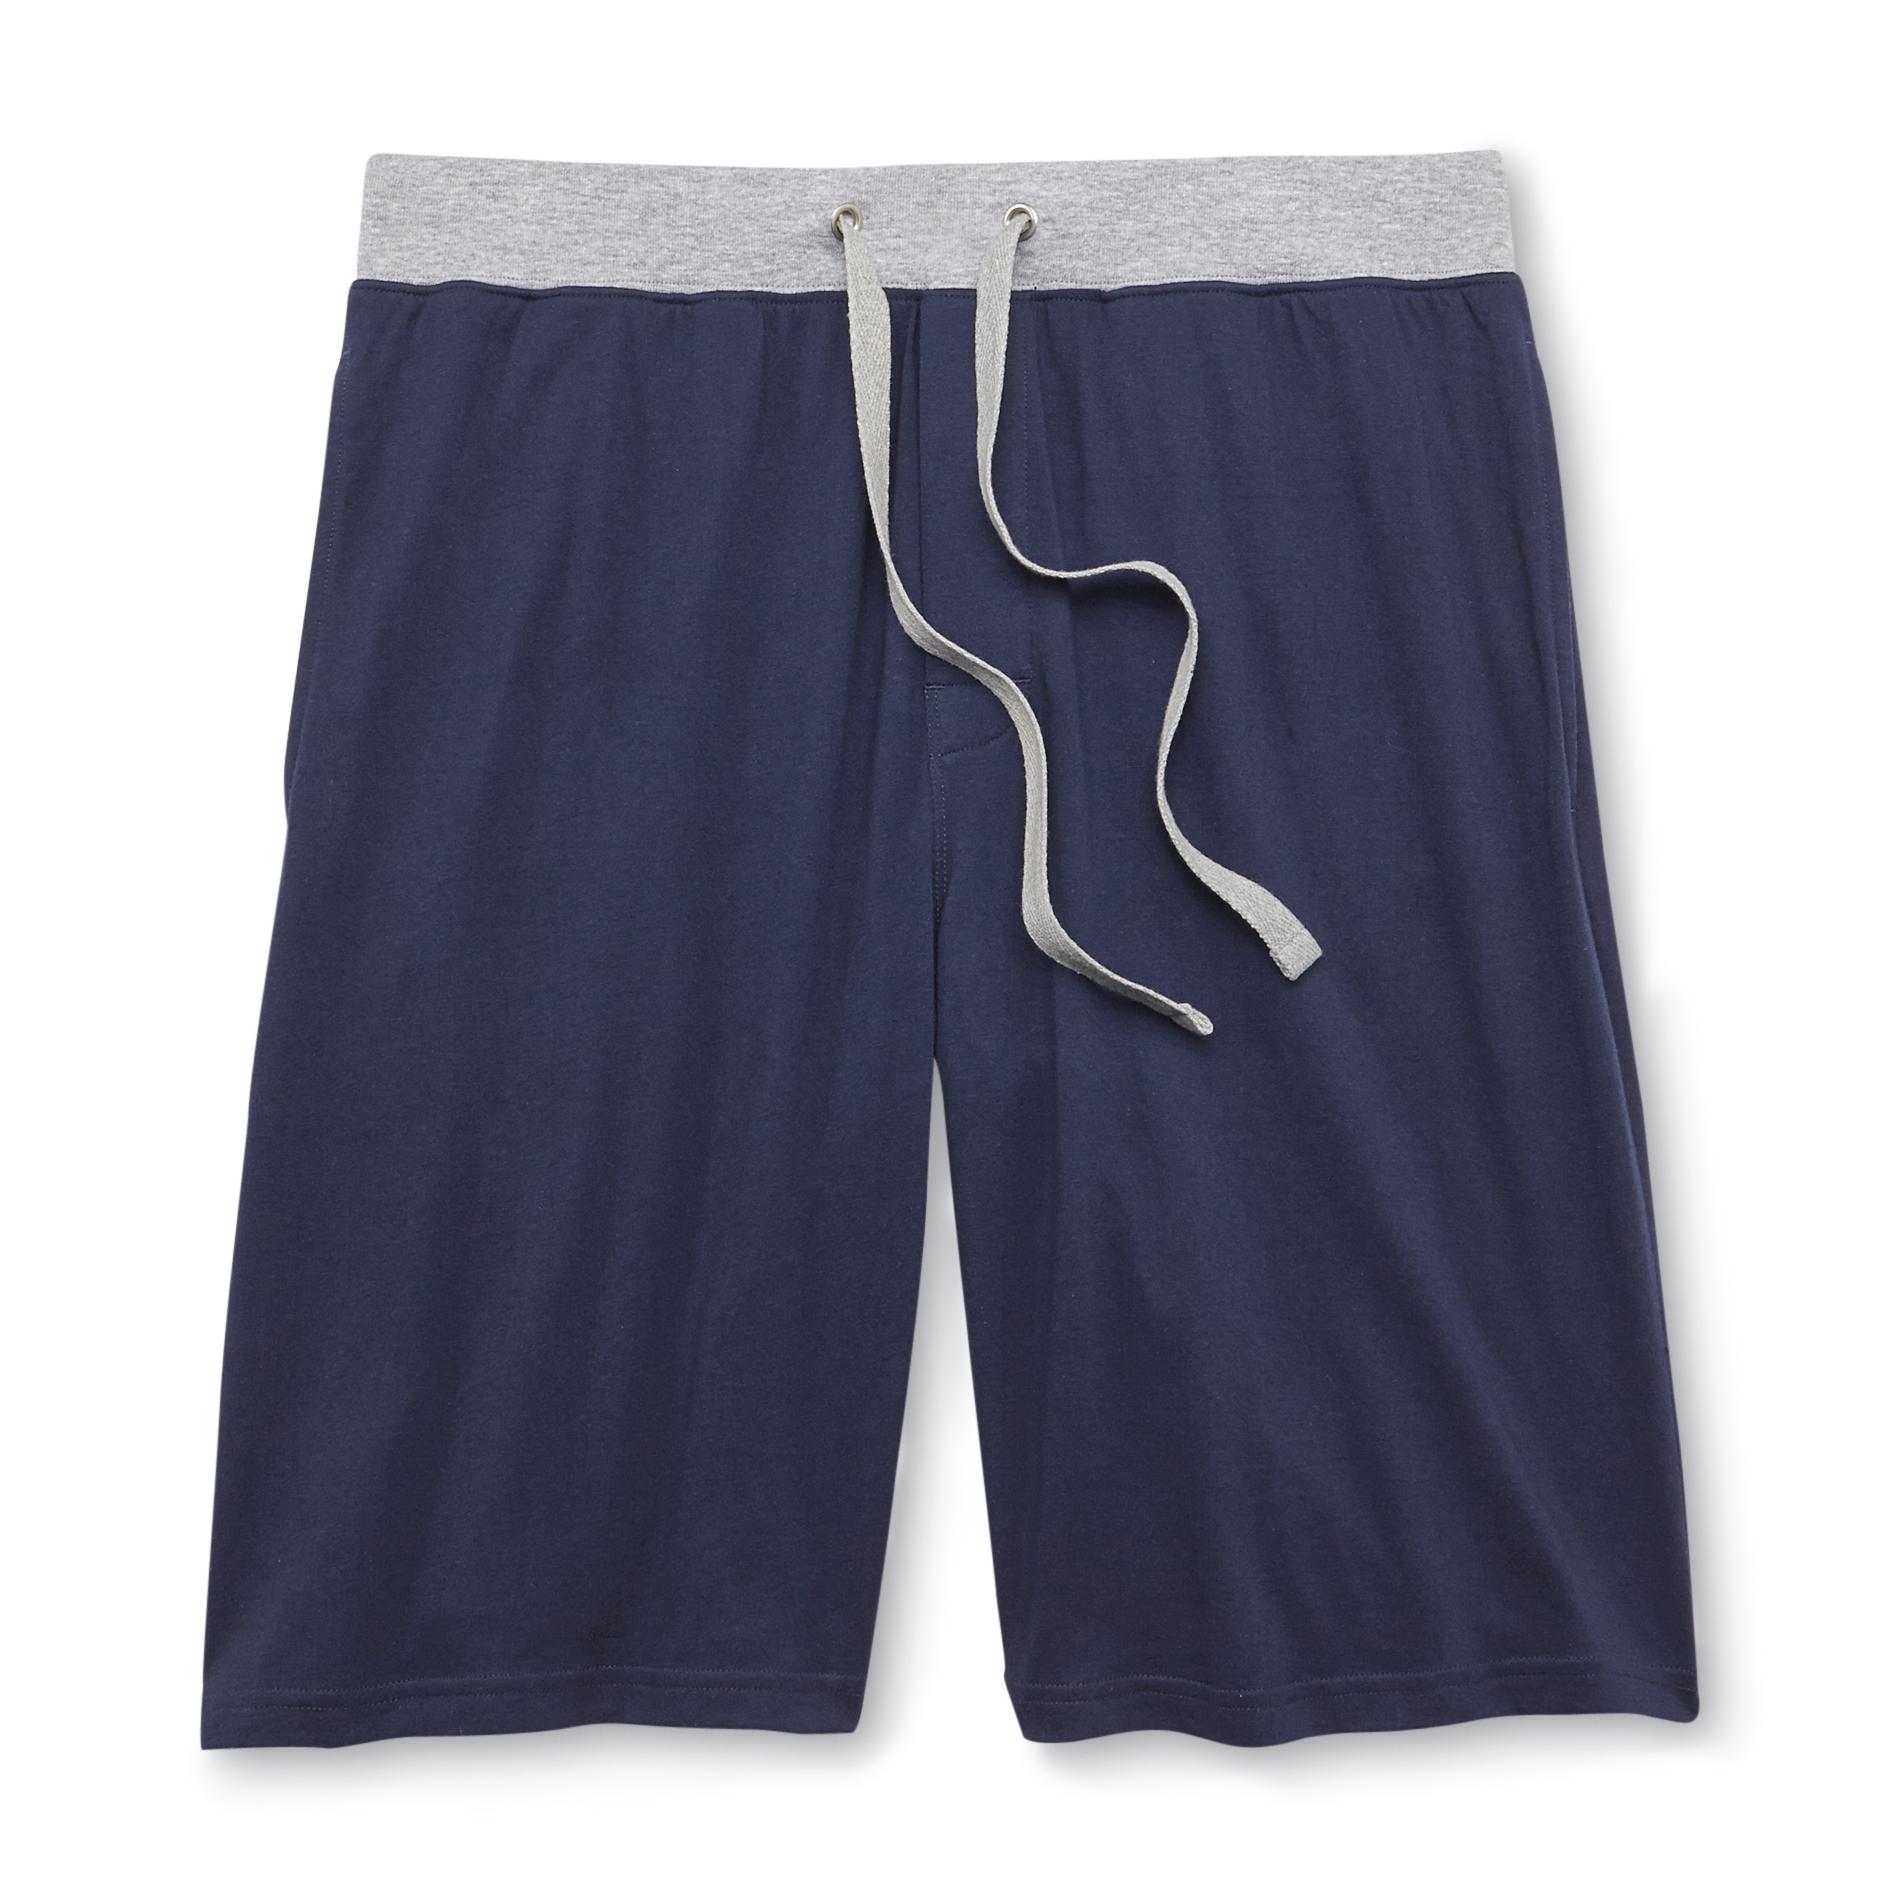 Covington Men's Knit Lounge Shorts